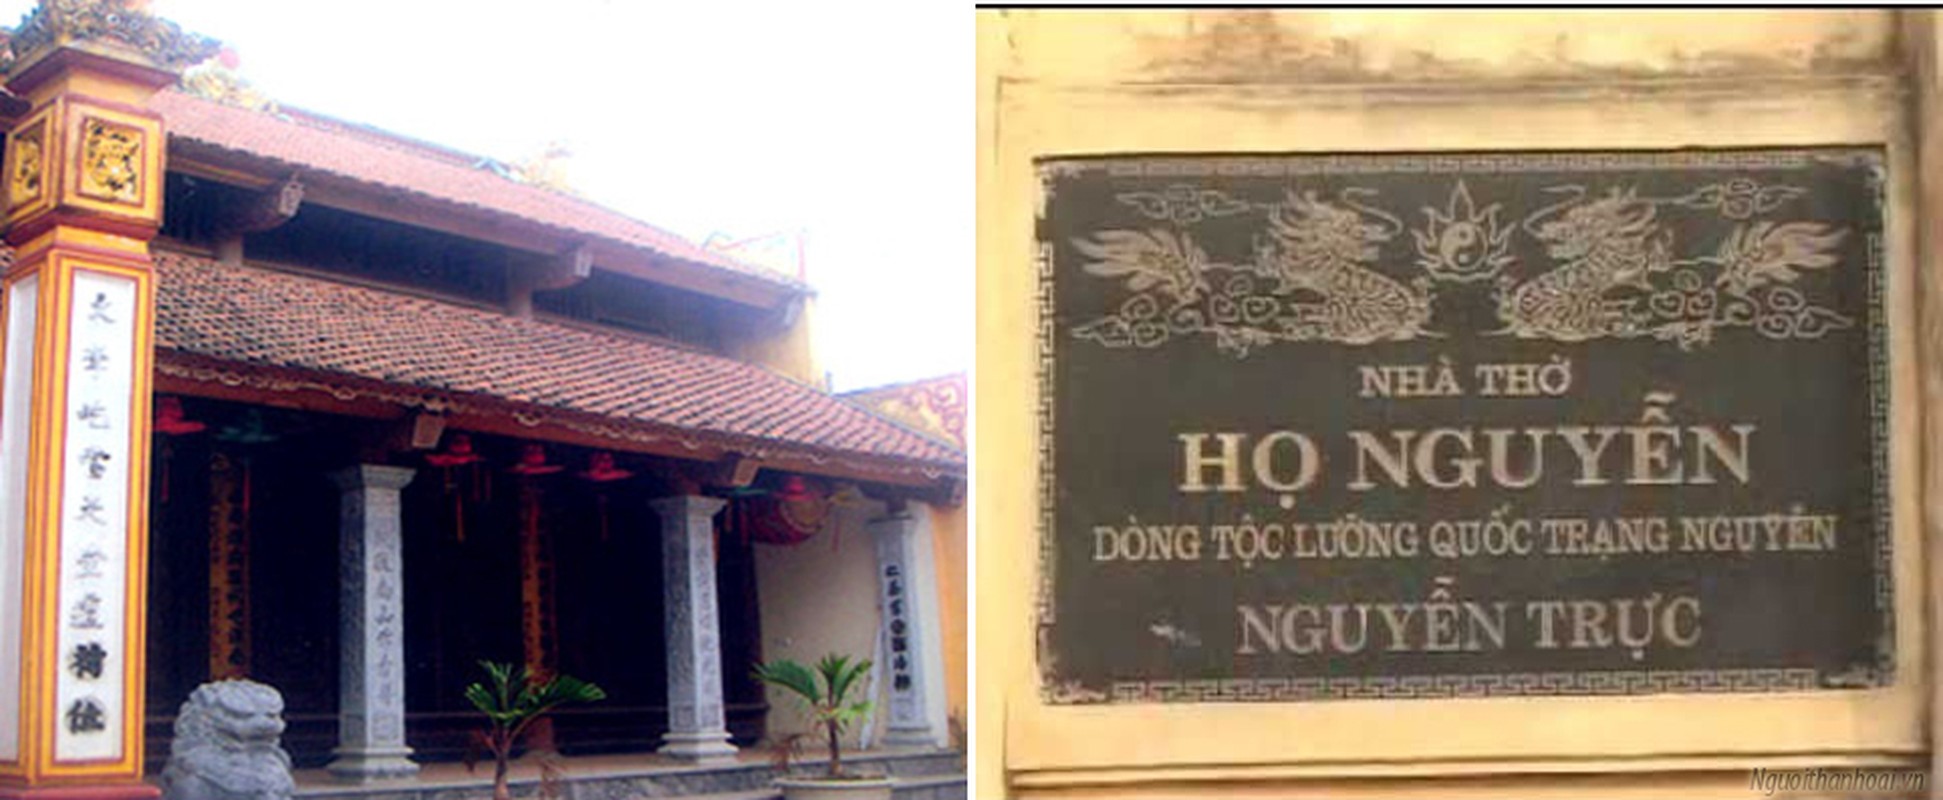 Nguyen Truc, trang nguyen duoc vua ve hinh de canh ngai vang-Hinh-12